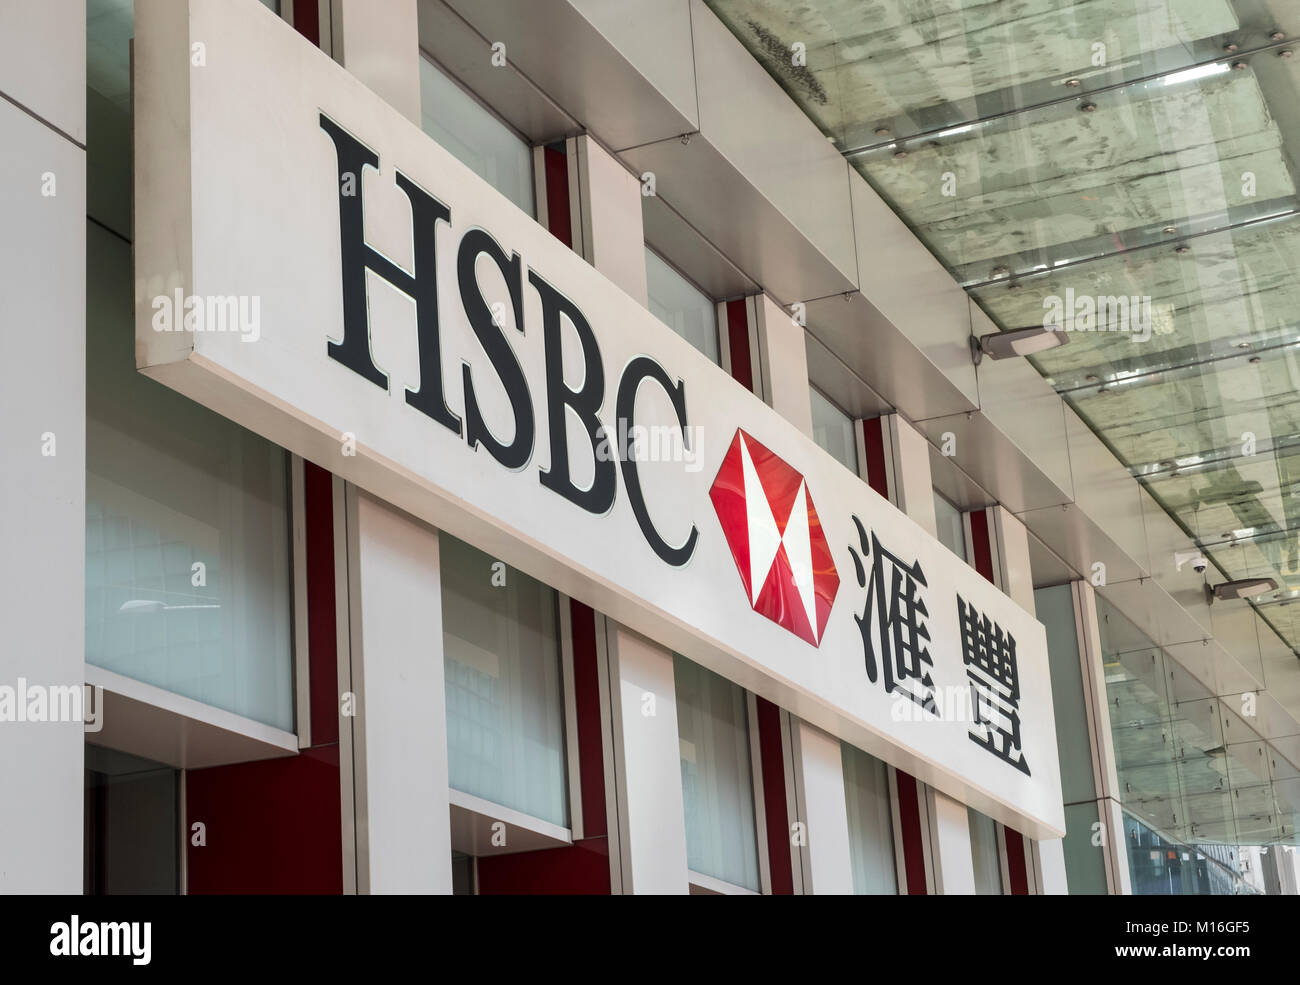 Hong Kong, Hong Kong - January 21, 2018: HSBC Hongkong and Shanghai Bank inscription on the wall. HSBC is one of largest bank groups. Stock Photo